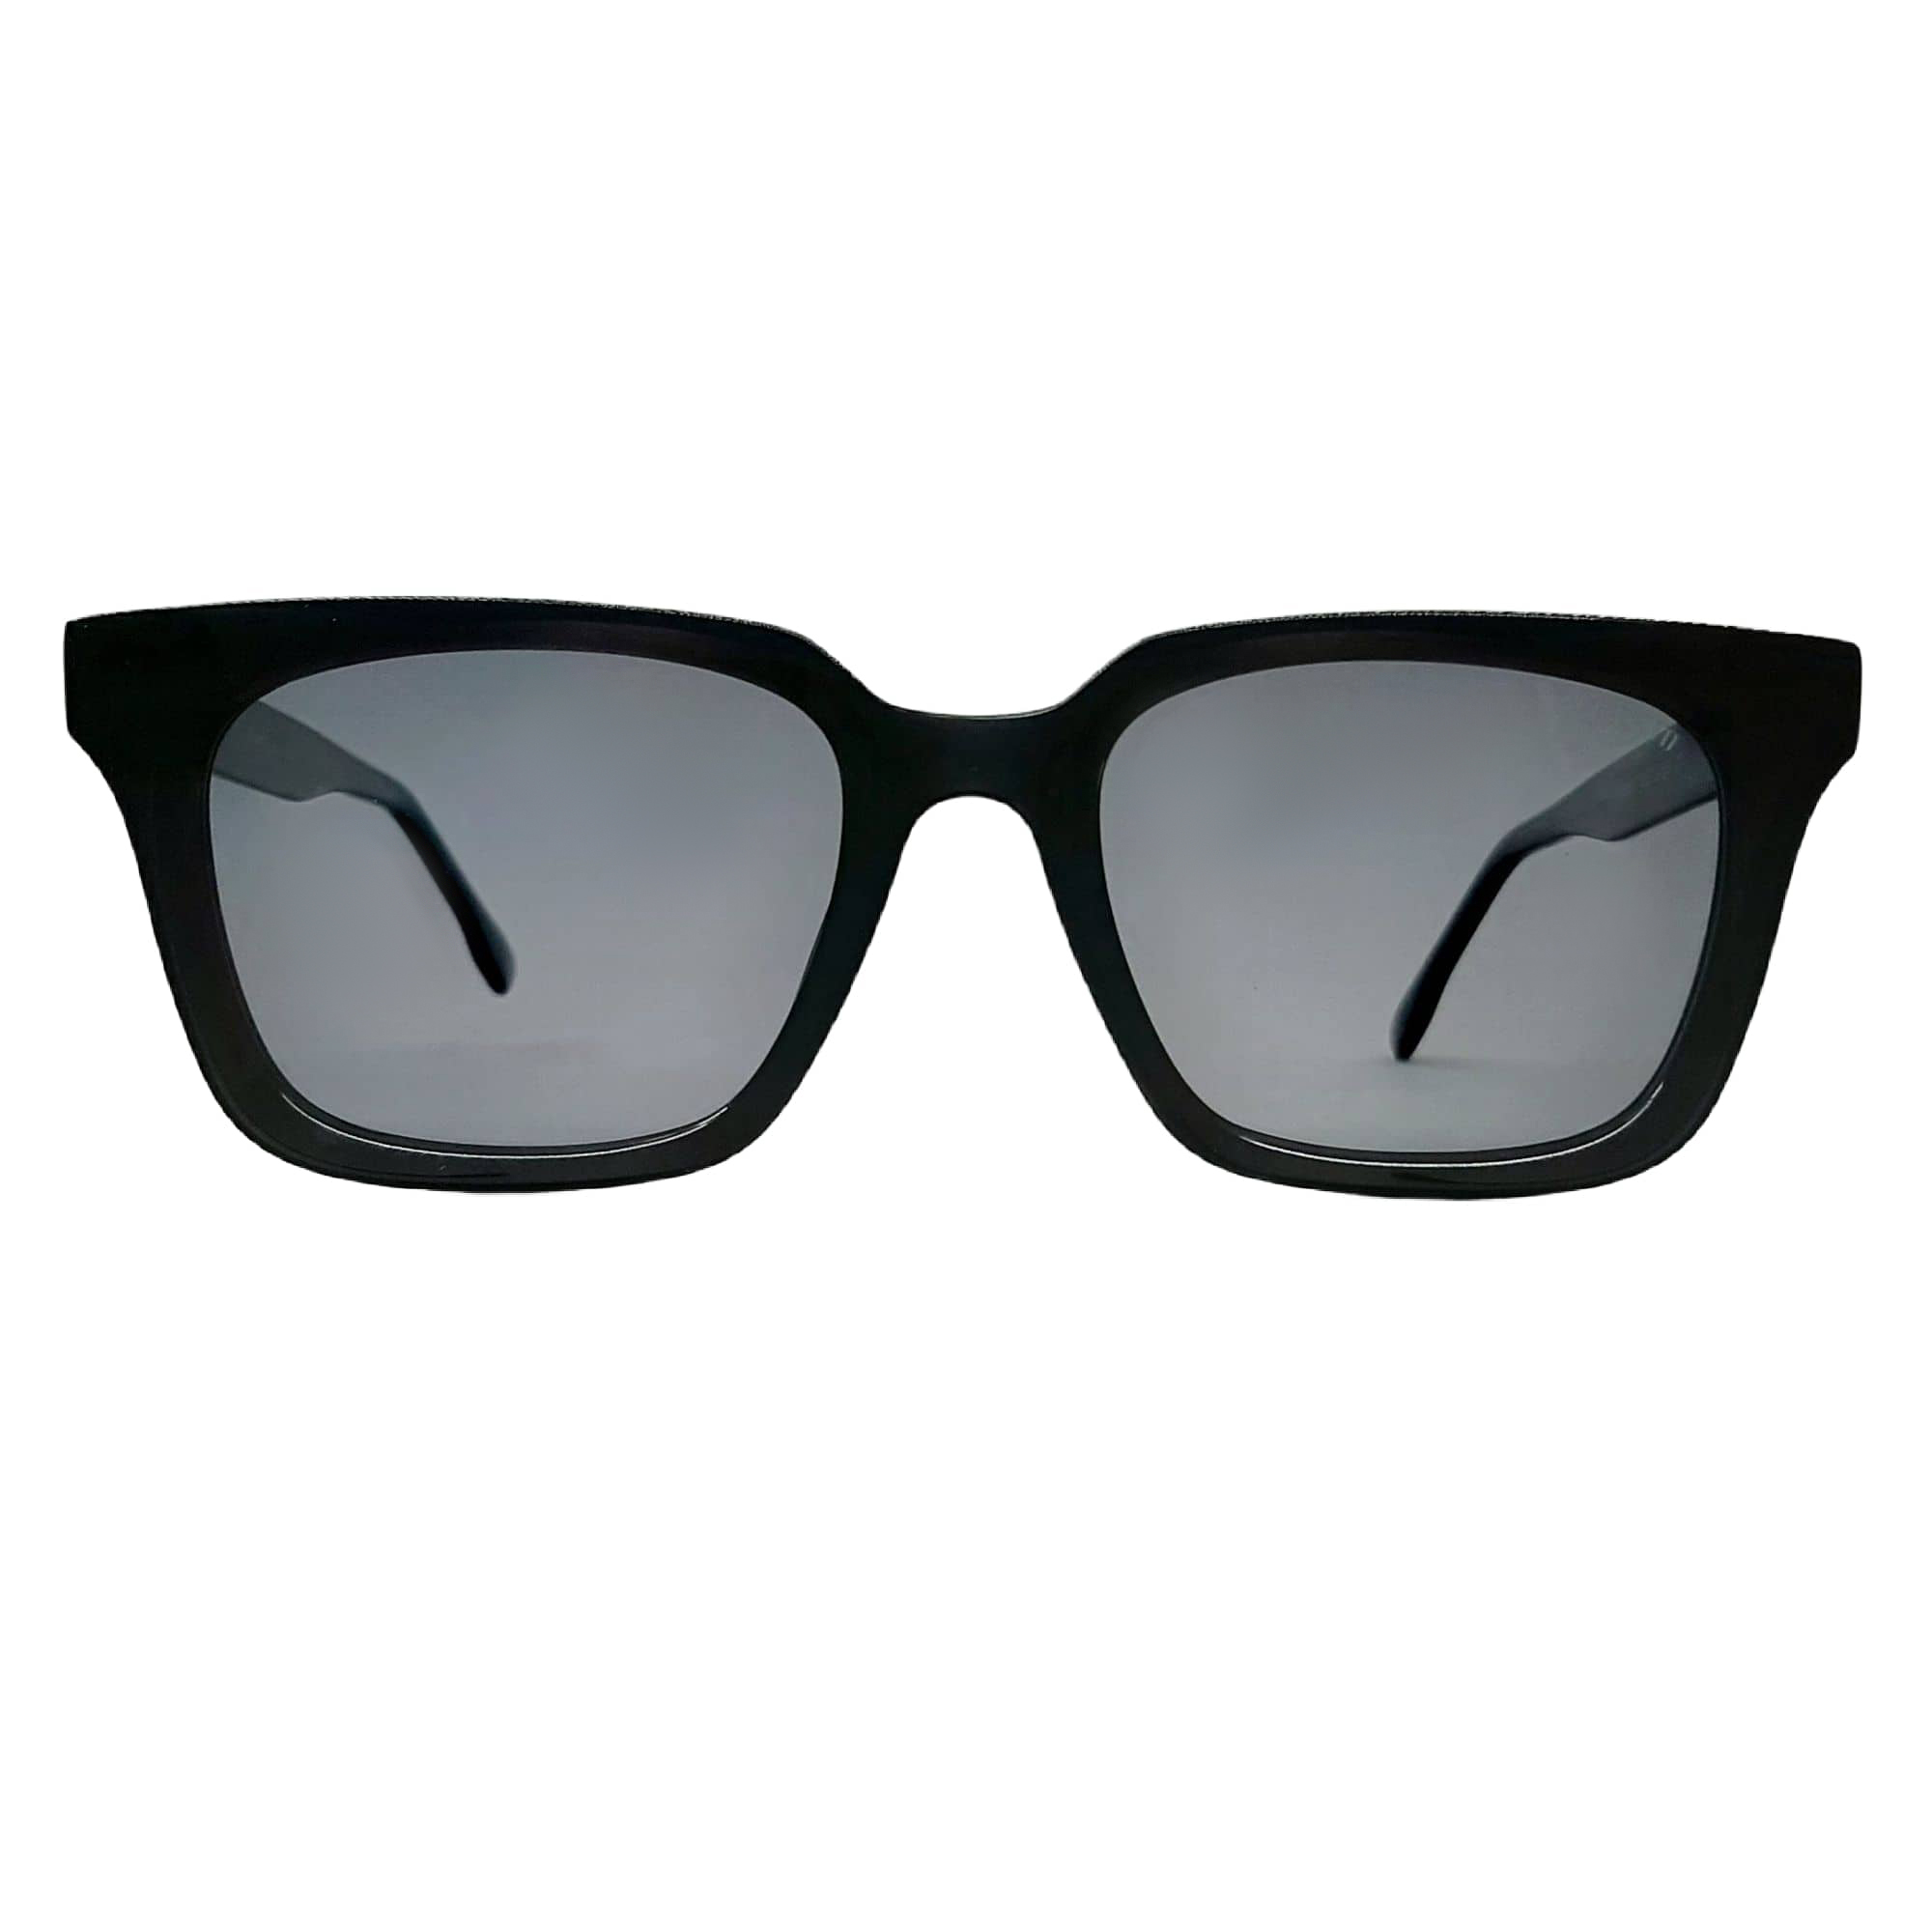 عینک آفتابی پاواروتی مدل FG6007c2